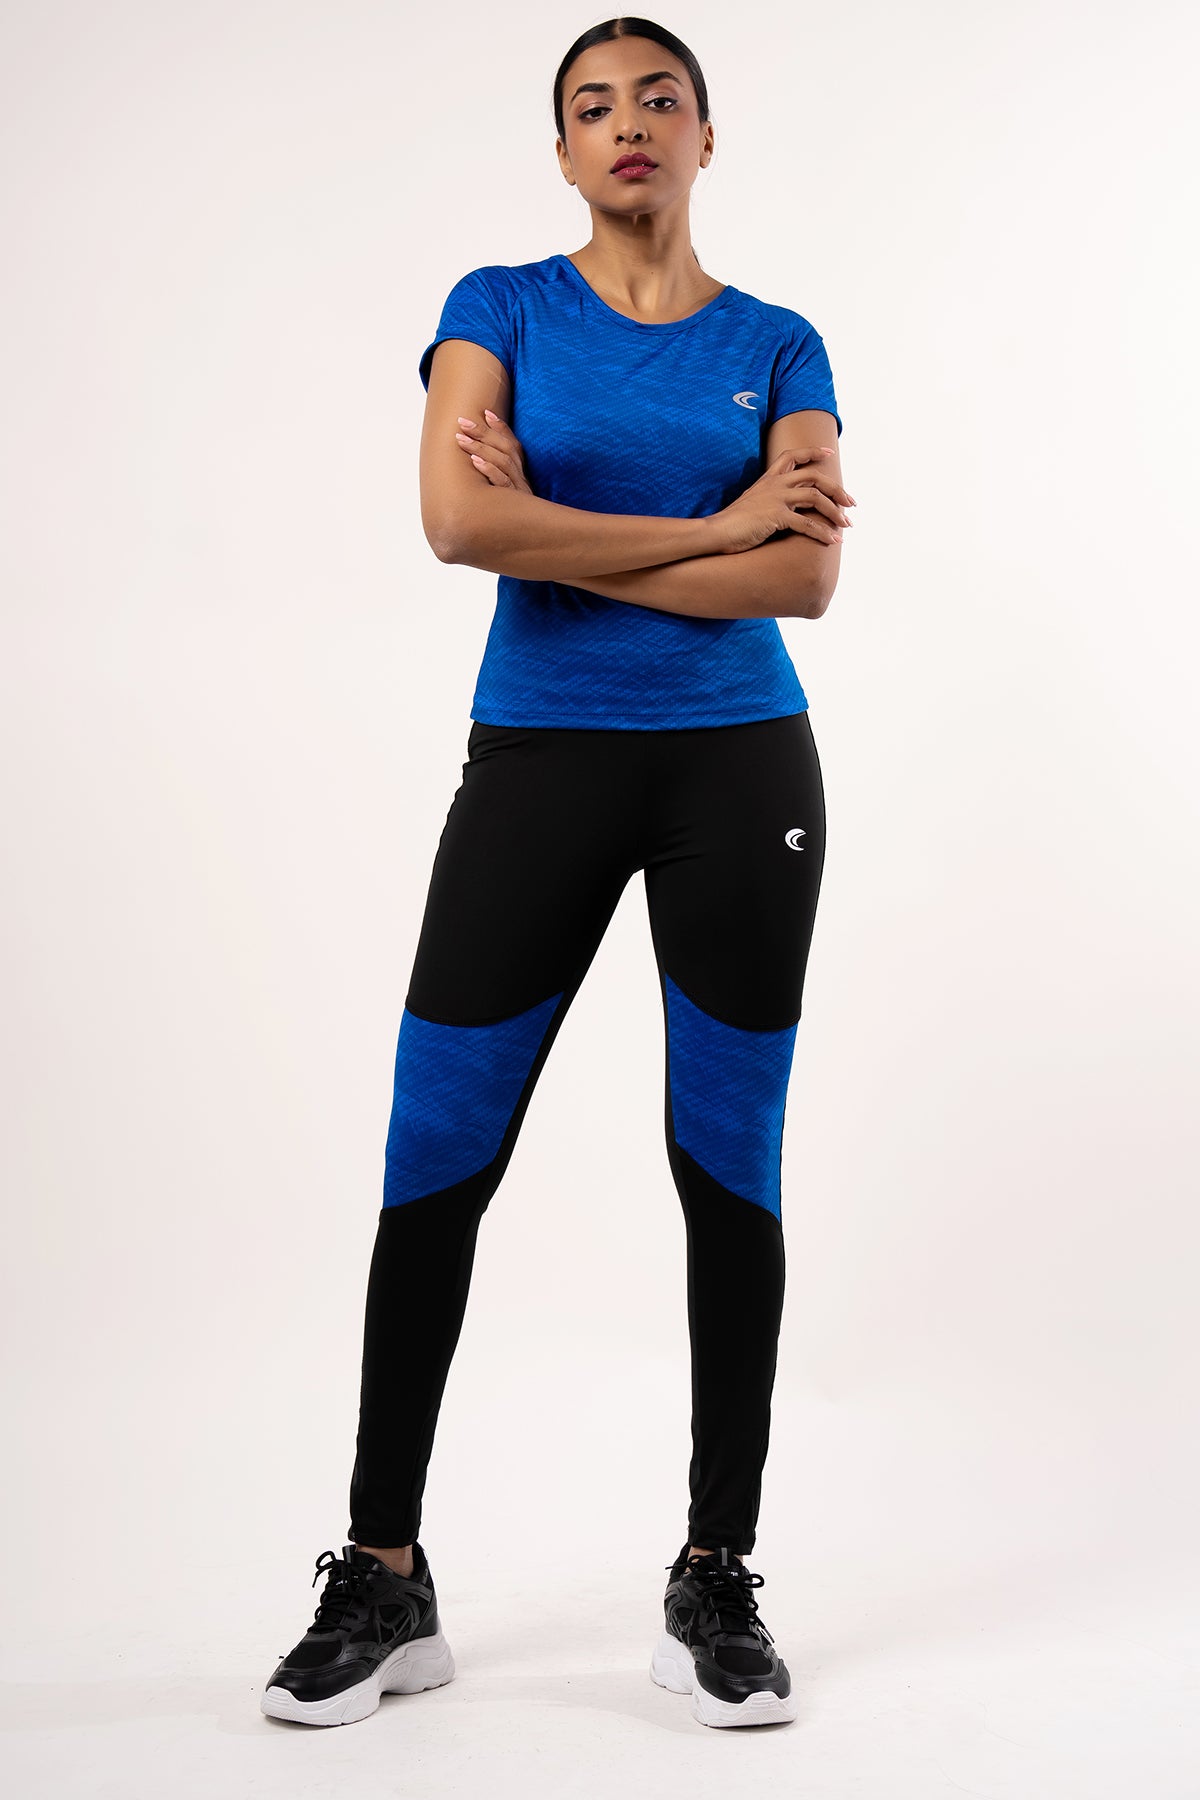 Core Basics Women's Sport Pant